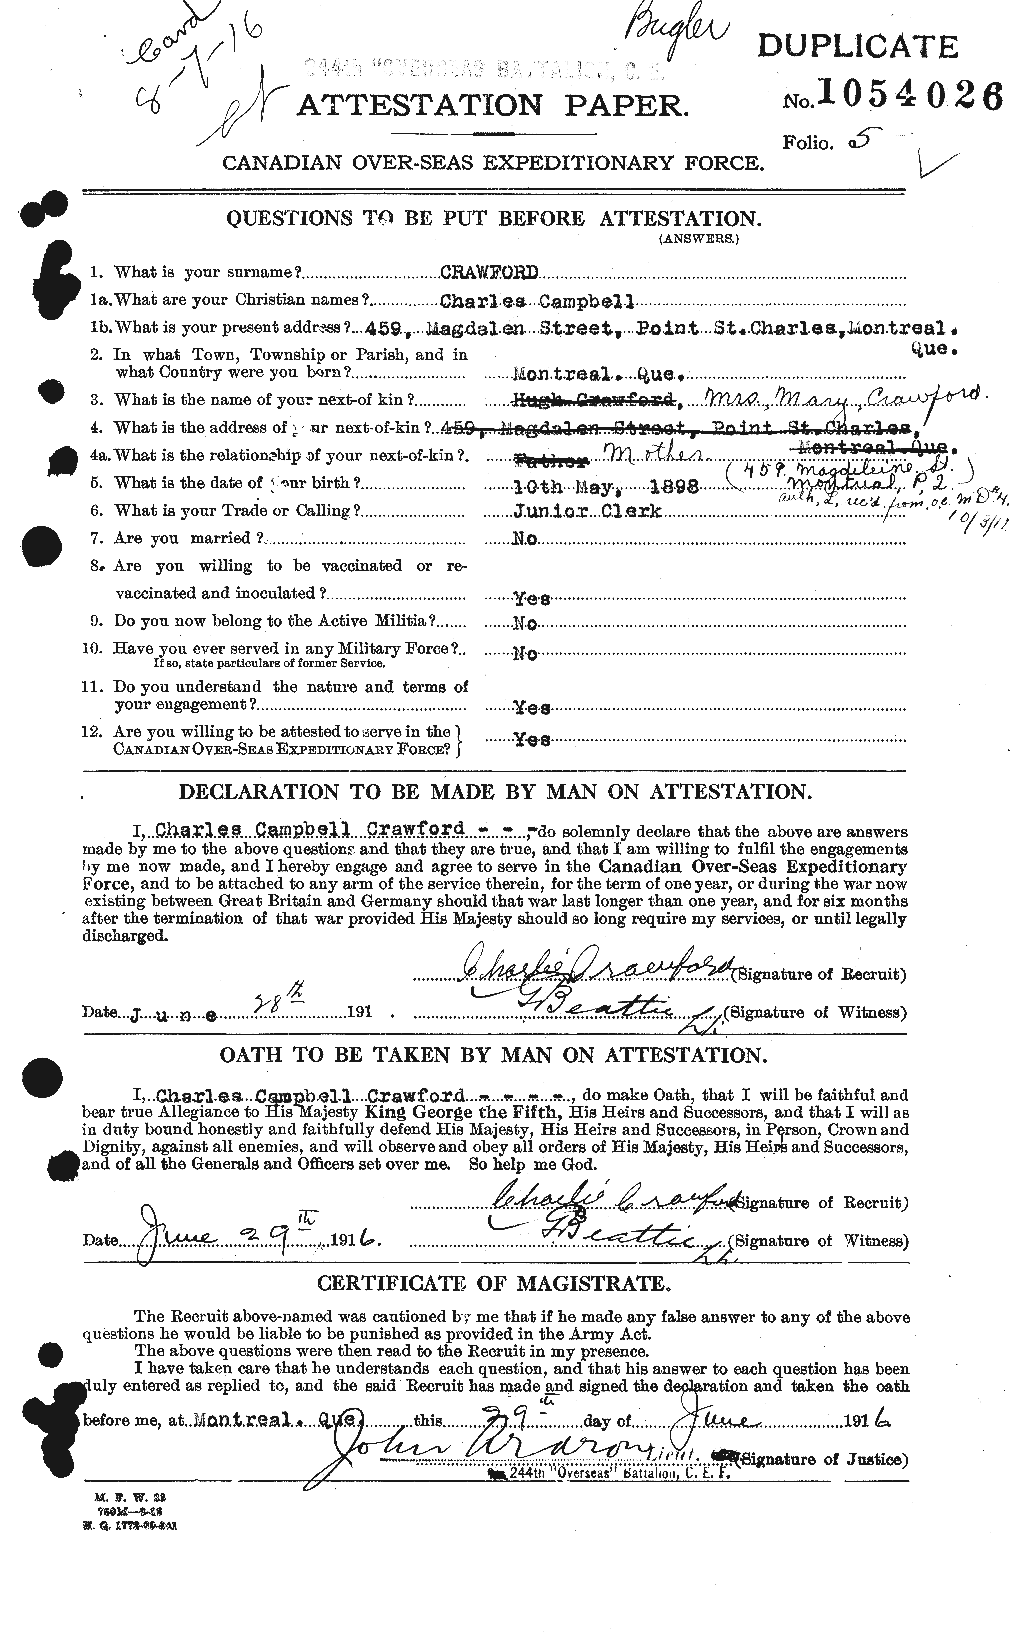 Dossiers du Personnel de la Première Guerre mondiale - CEC 060844a